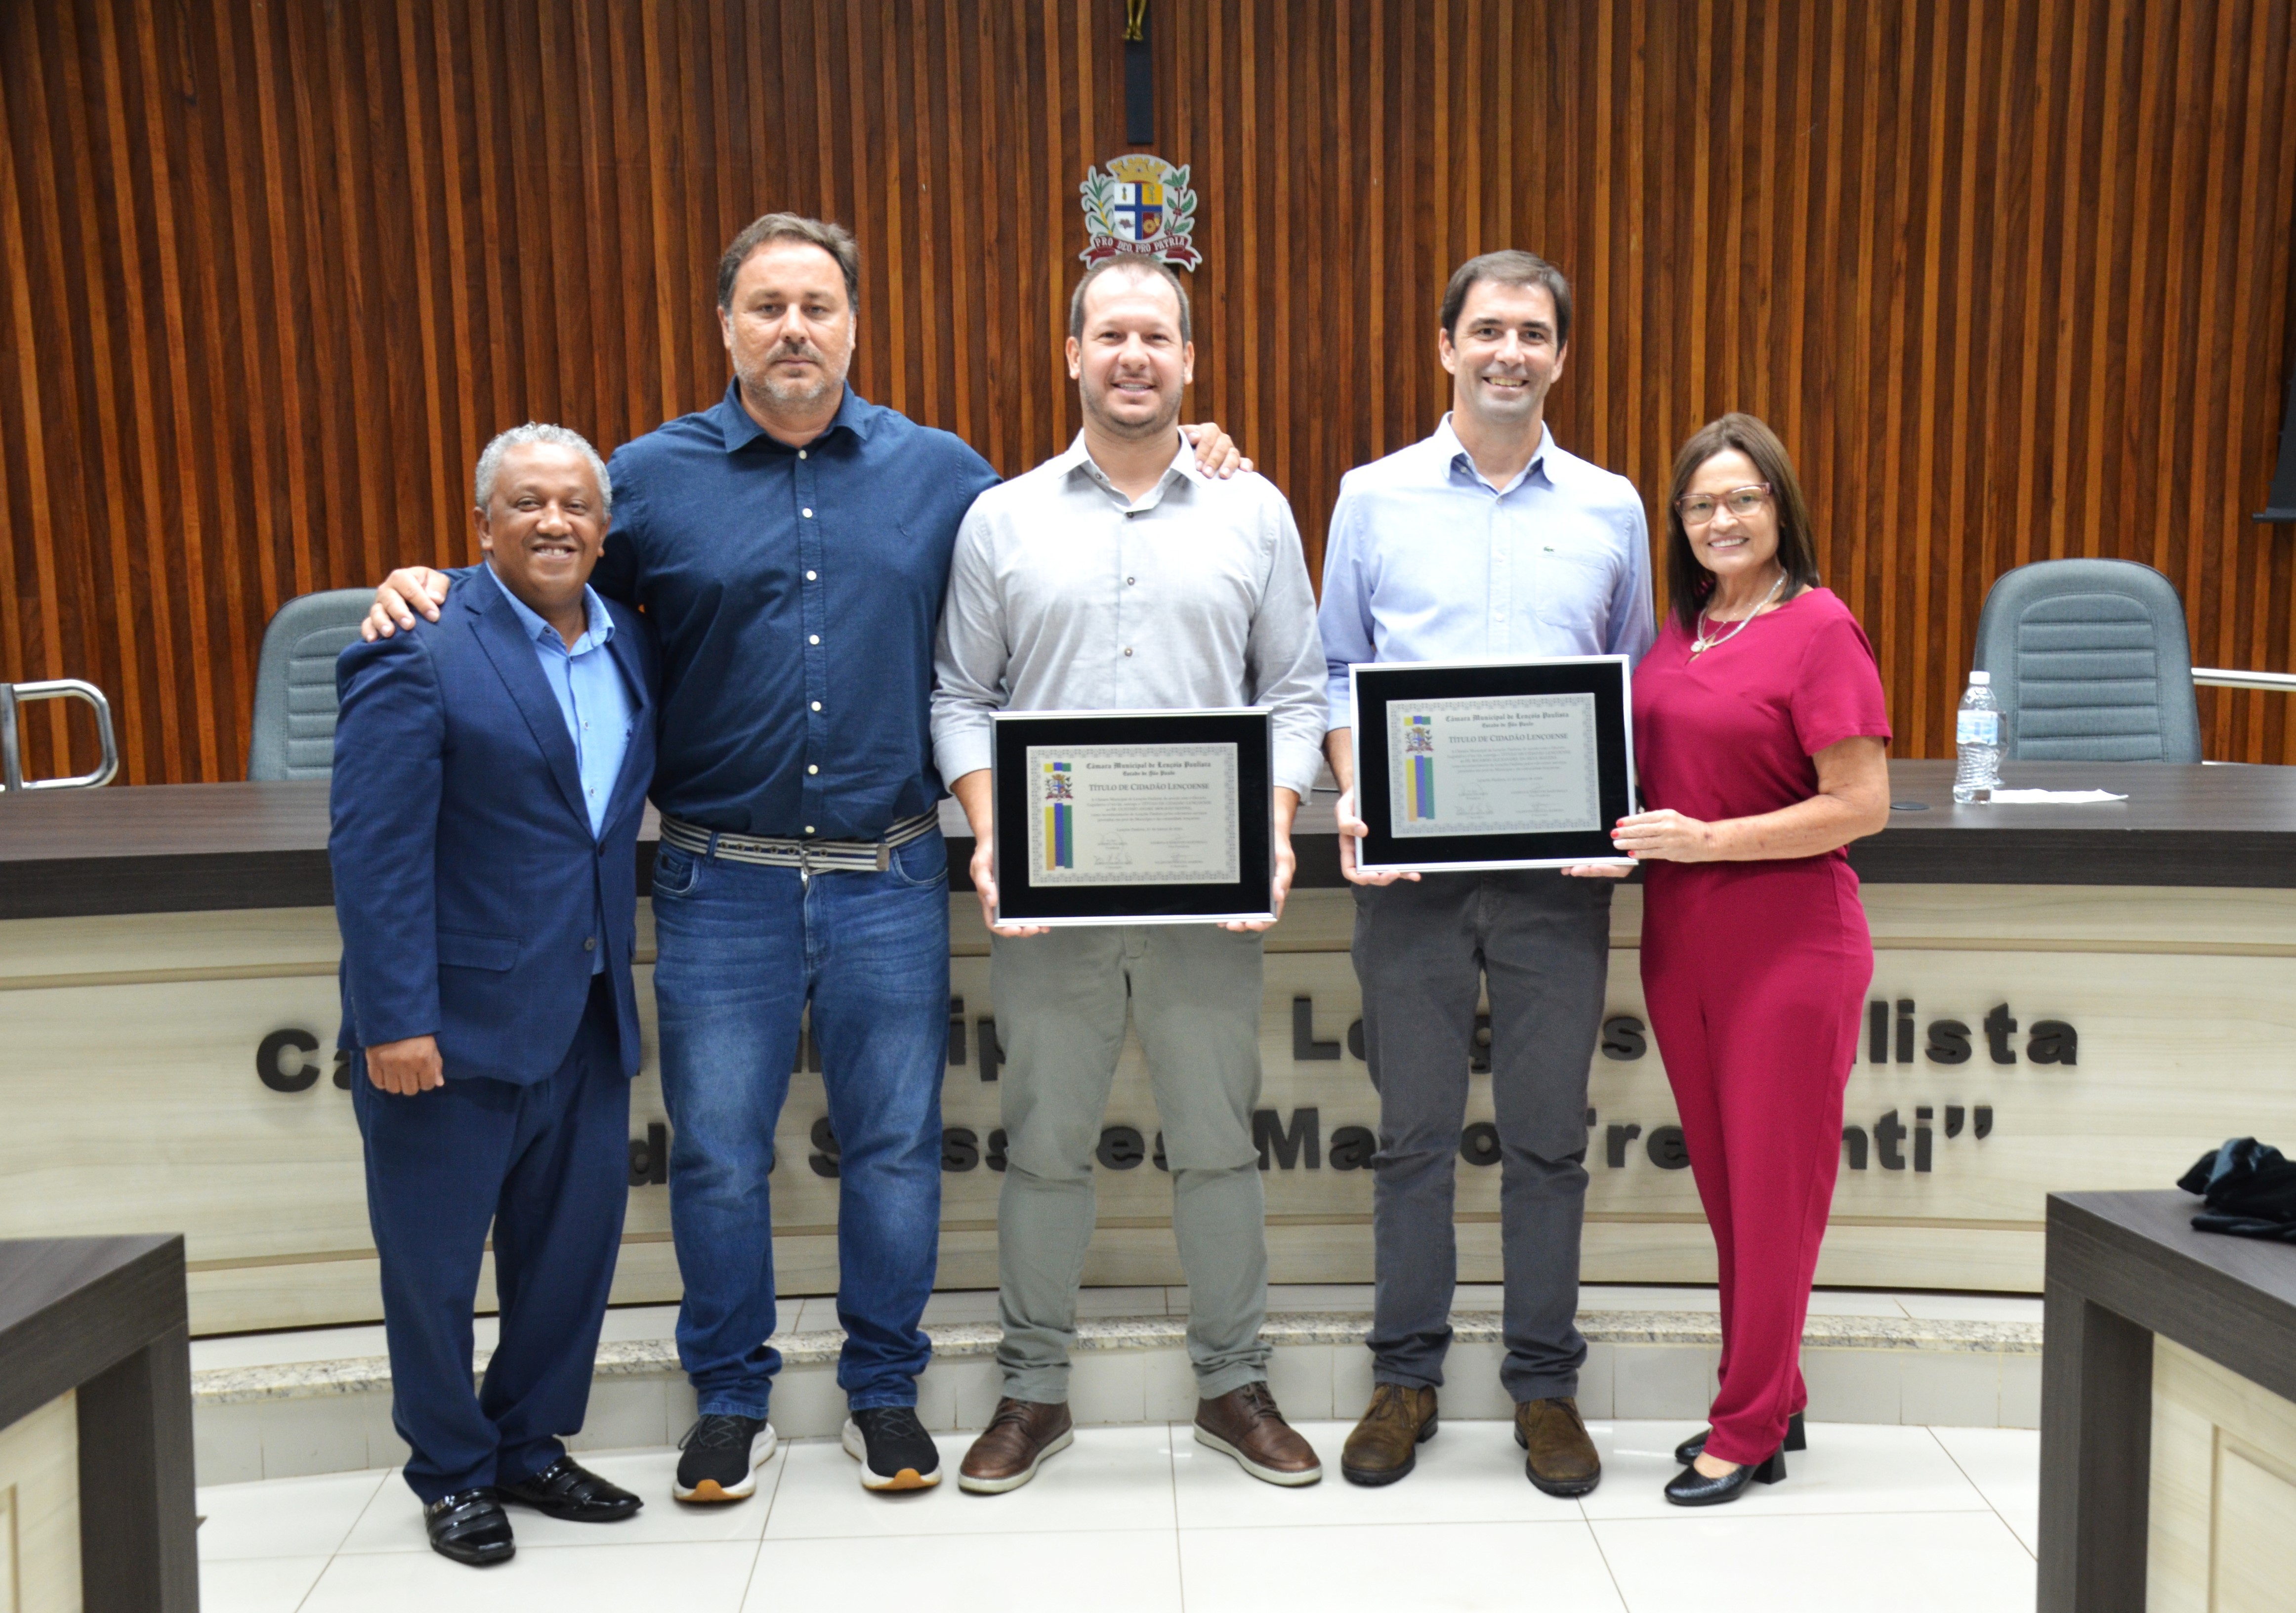  Gustavo Manne e Ricardo Bozzini recebem Título de Cidadão Lençoense